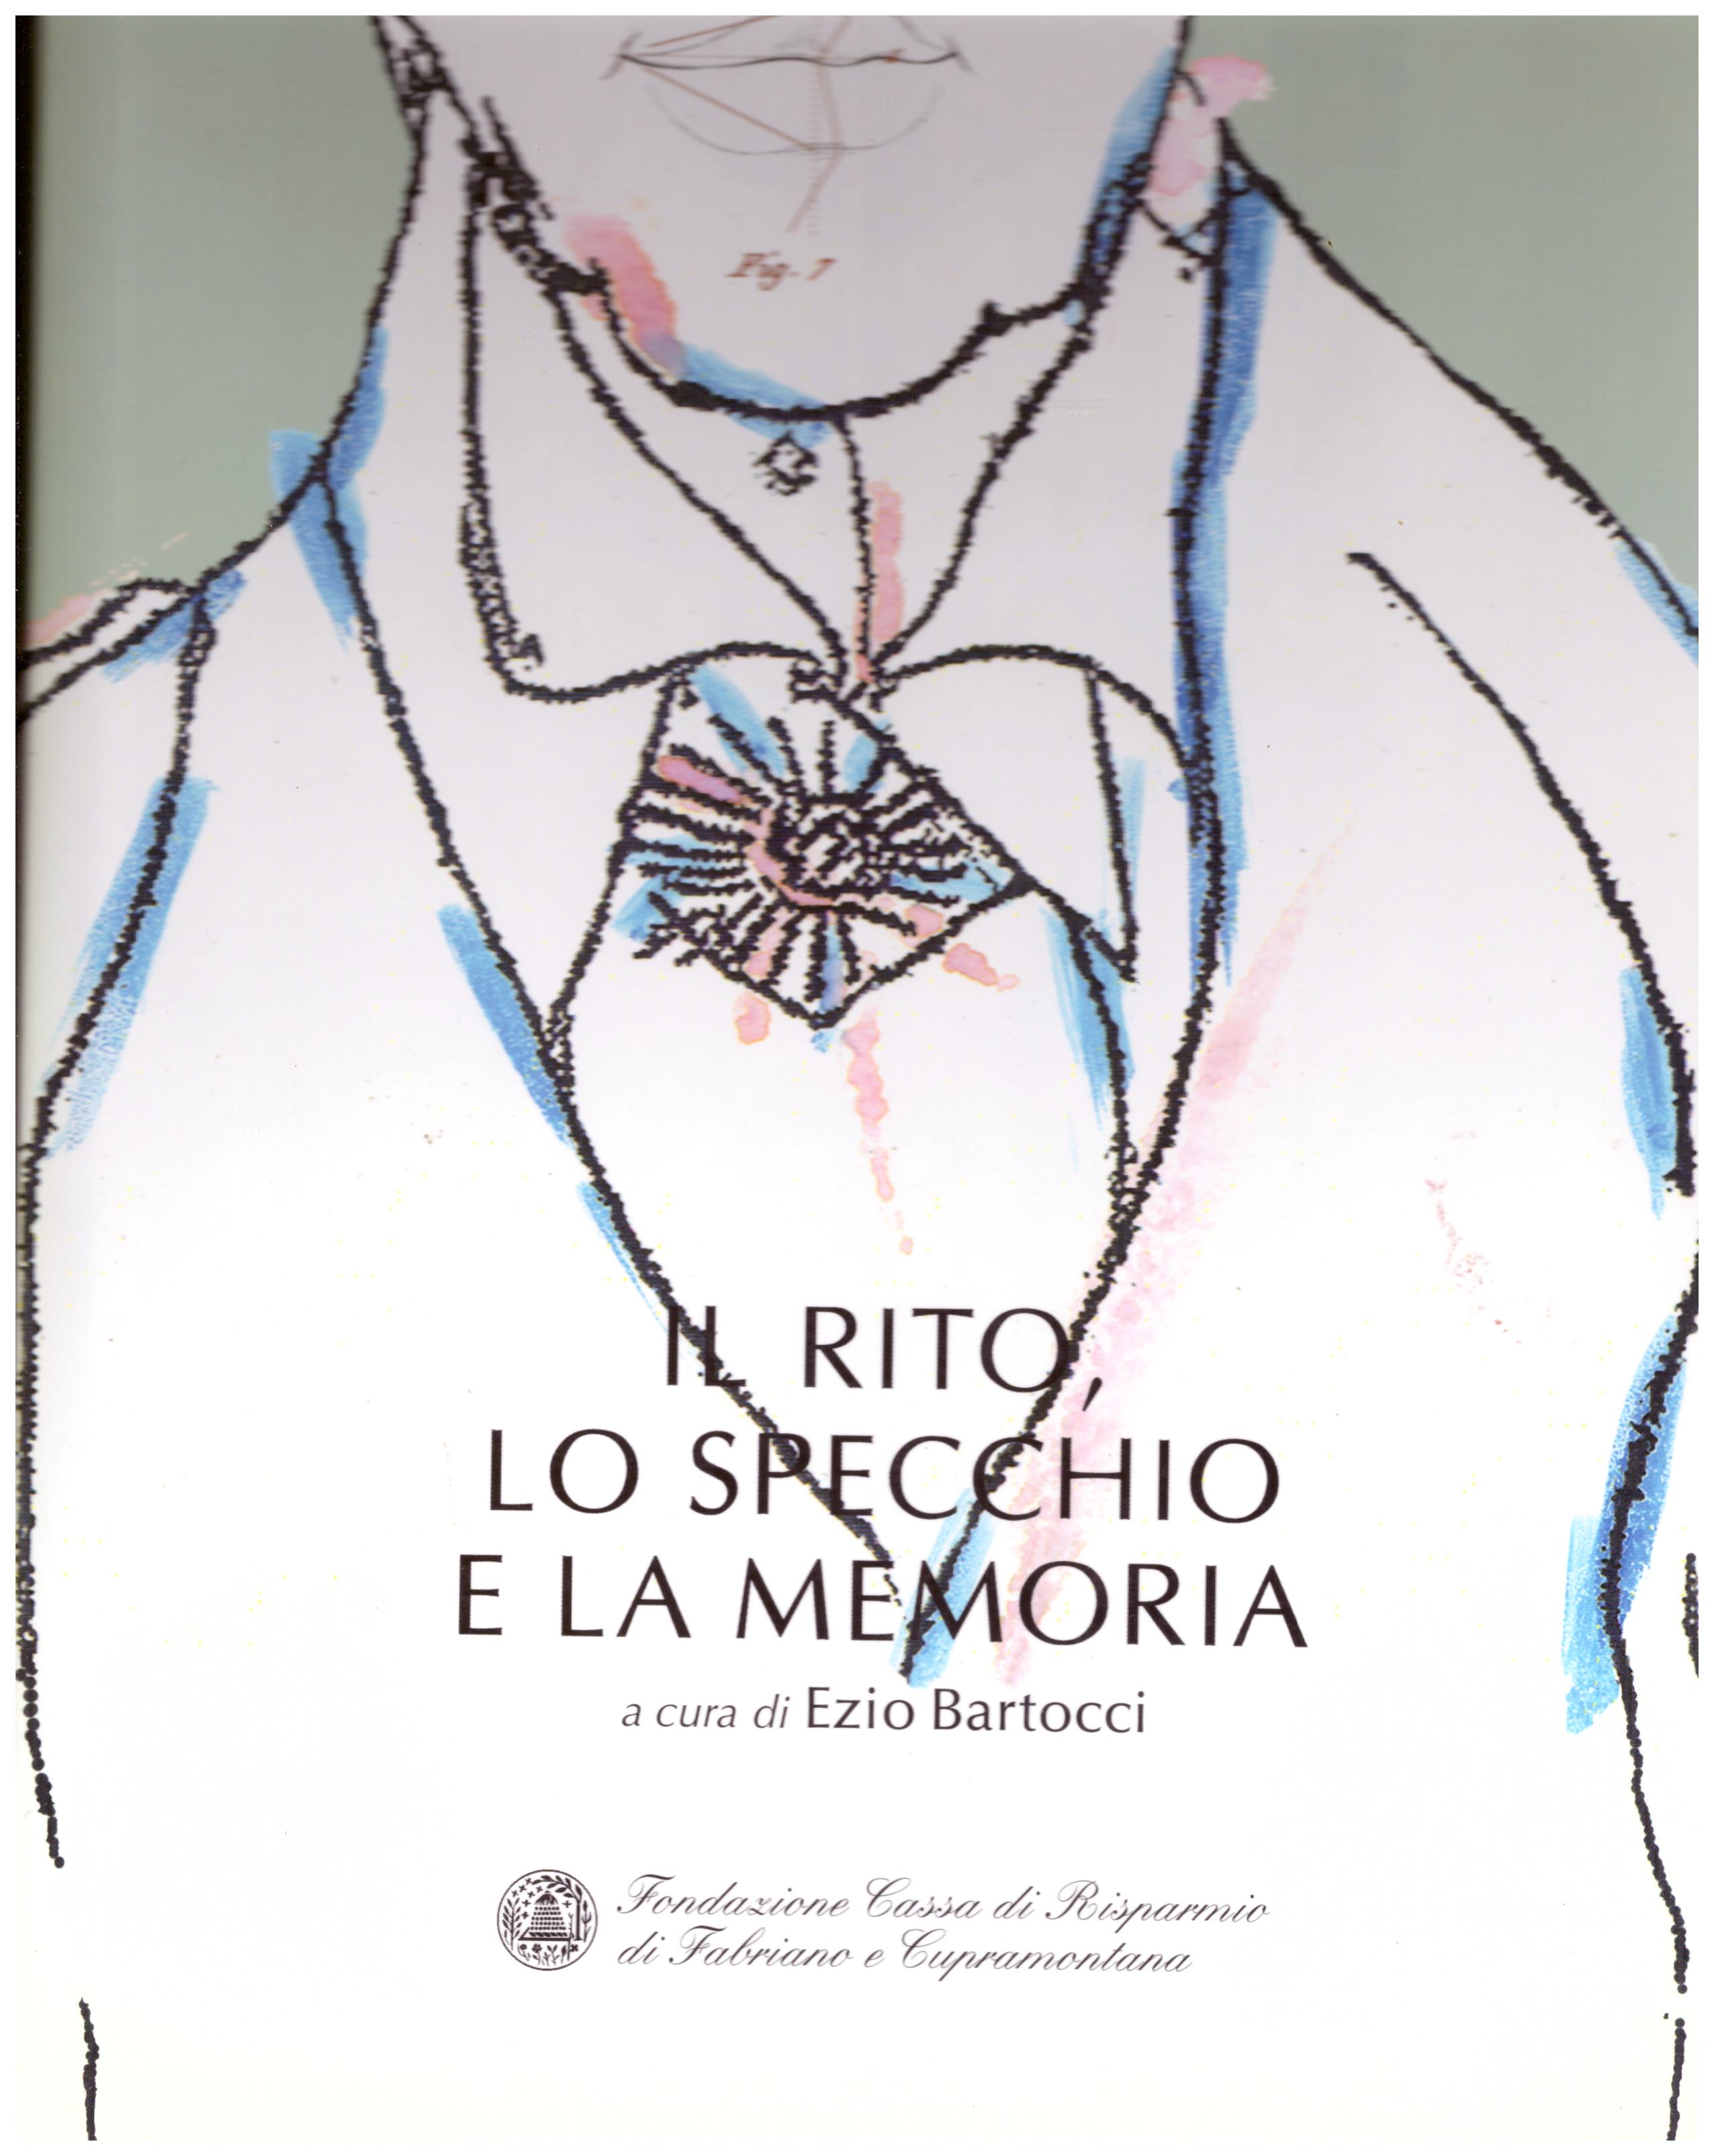 Titolo: Il rito, lo specchio e la memoria Autore : AA.VV. A cura di Ezio Bartocci Editore: stampa nova, Jesi 2003